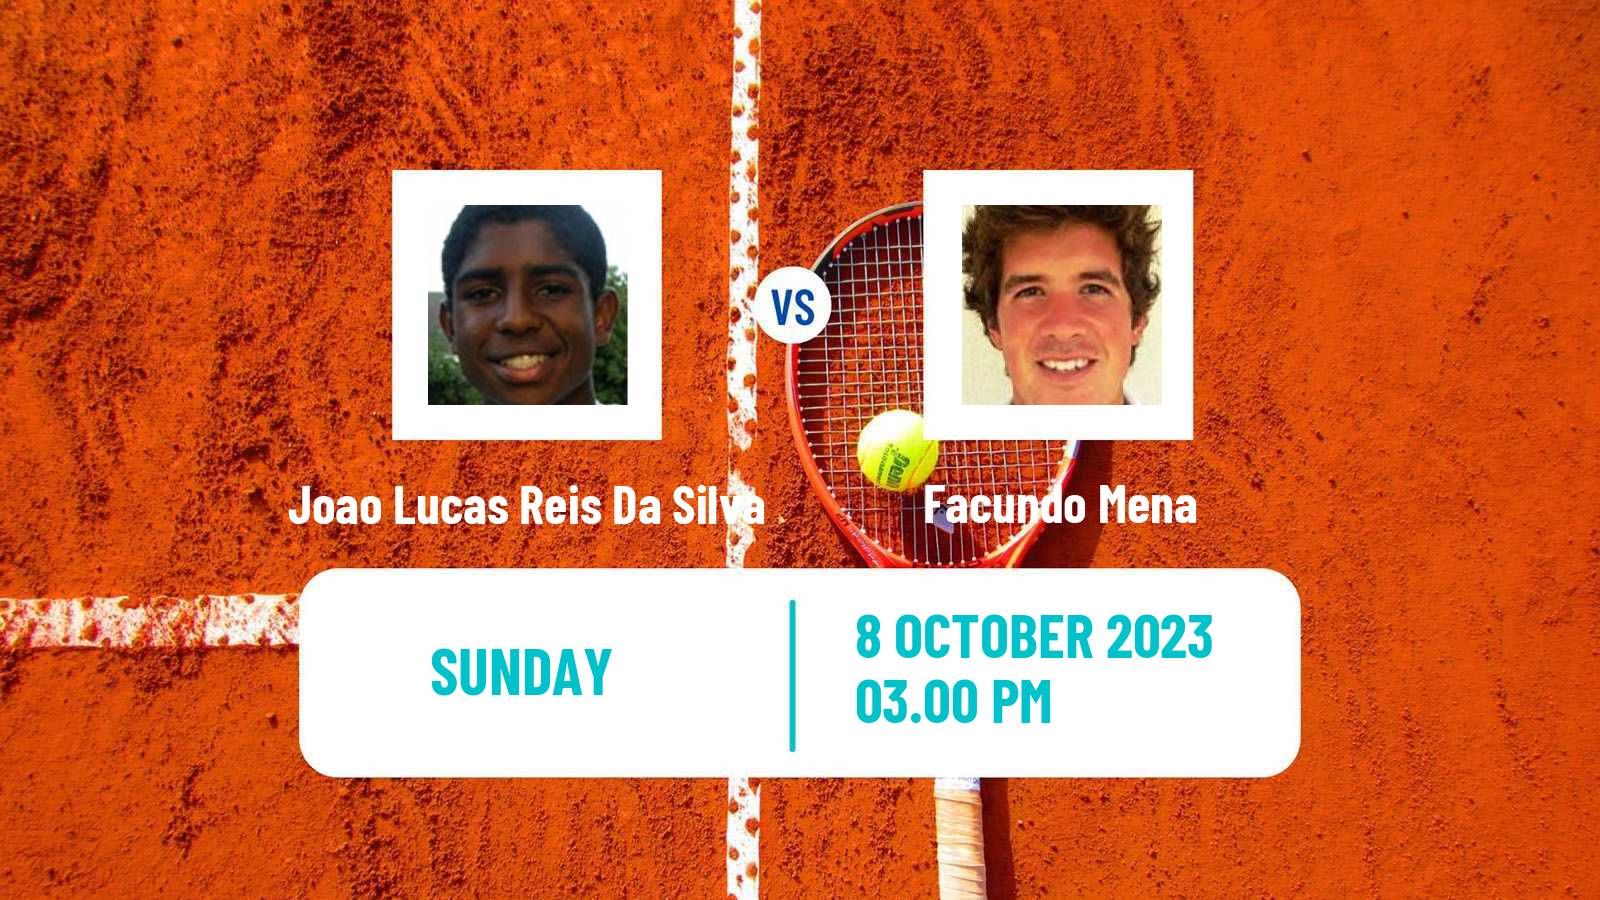 Tennis Buenos Aires 2 Challenger Men Joao Lucas Reis Da Silva - Facundo Mena